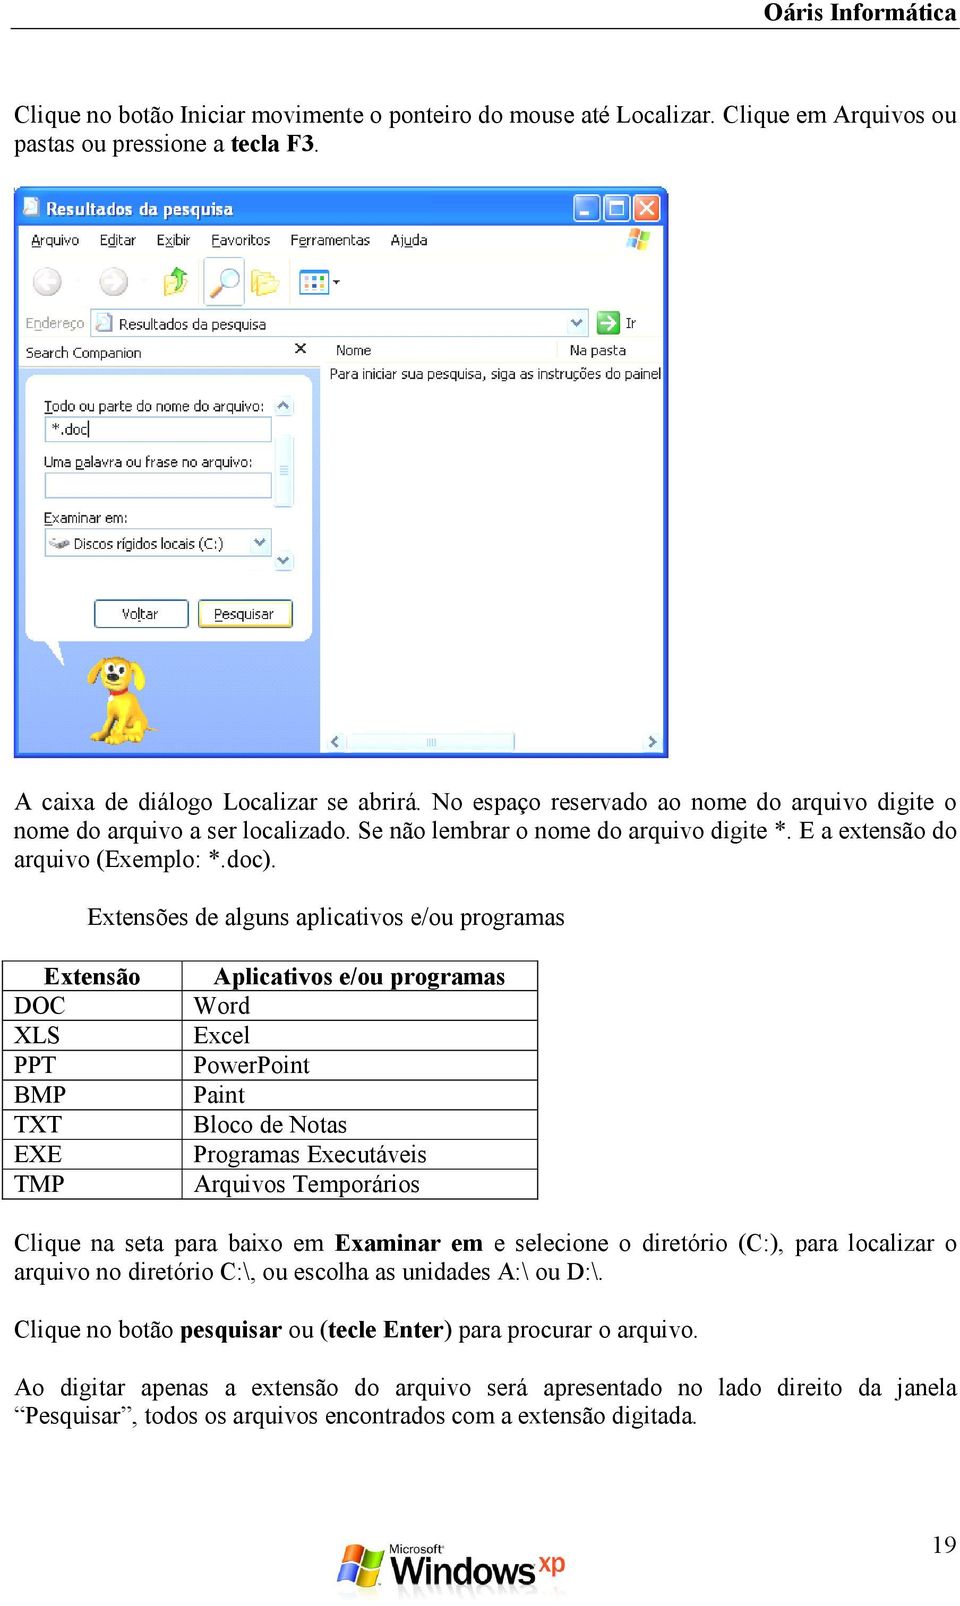 Extensões de alguns aplicativos e/ou programas Extensão DOC XLS PPT BMP TXT EXE TMP Aplicativos e/ou programas Word Excel PowerPoint Paint Bloco de Notas Programas Executáveis Arquivos Temporários